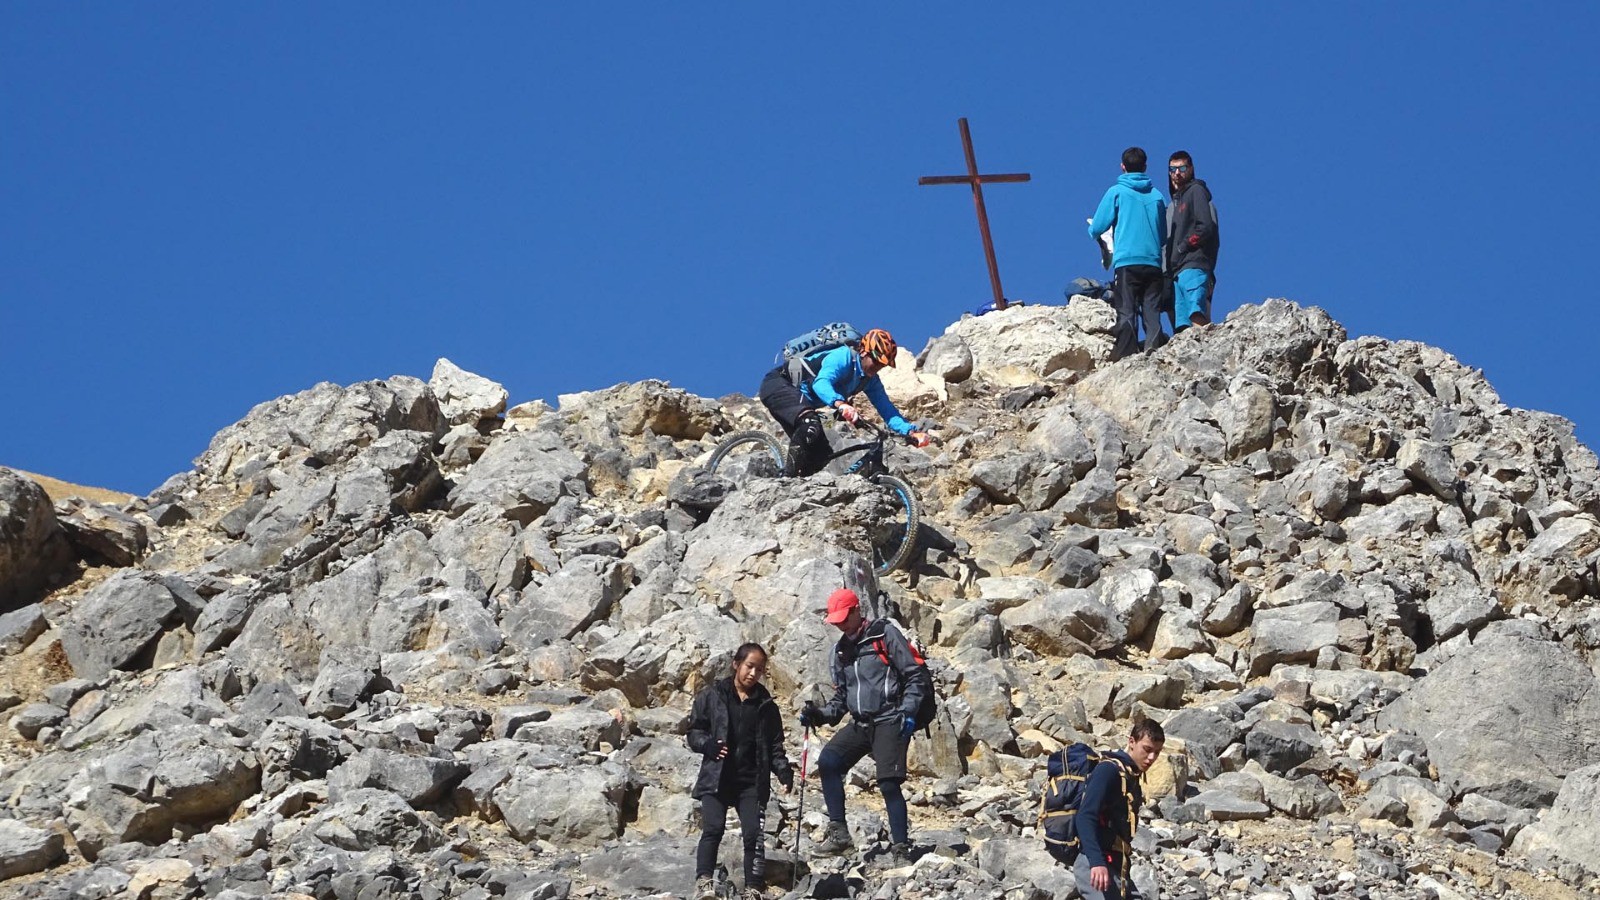 Raidillon dans les gros blocs à 2900 m, passage le plus "chaud" de la descente du Thabor (photo Yvan).